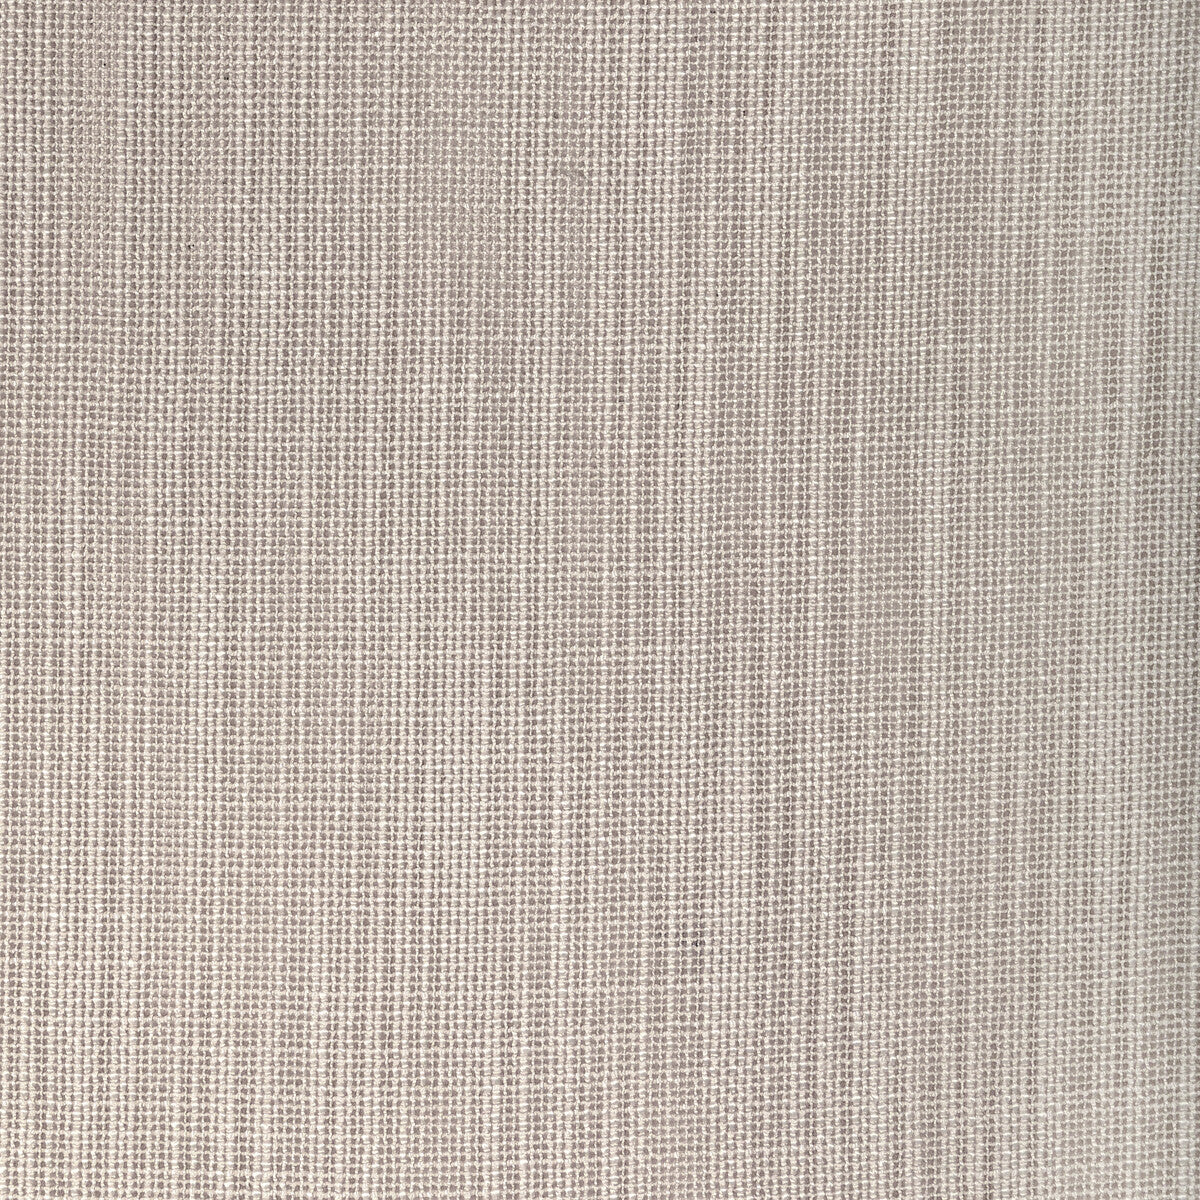 Kravet Design fabric in 4940-106 color - pattern 4940.106.0 - by Kravet Basics